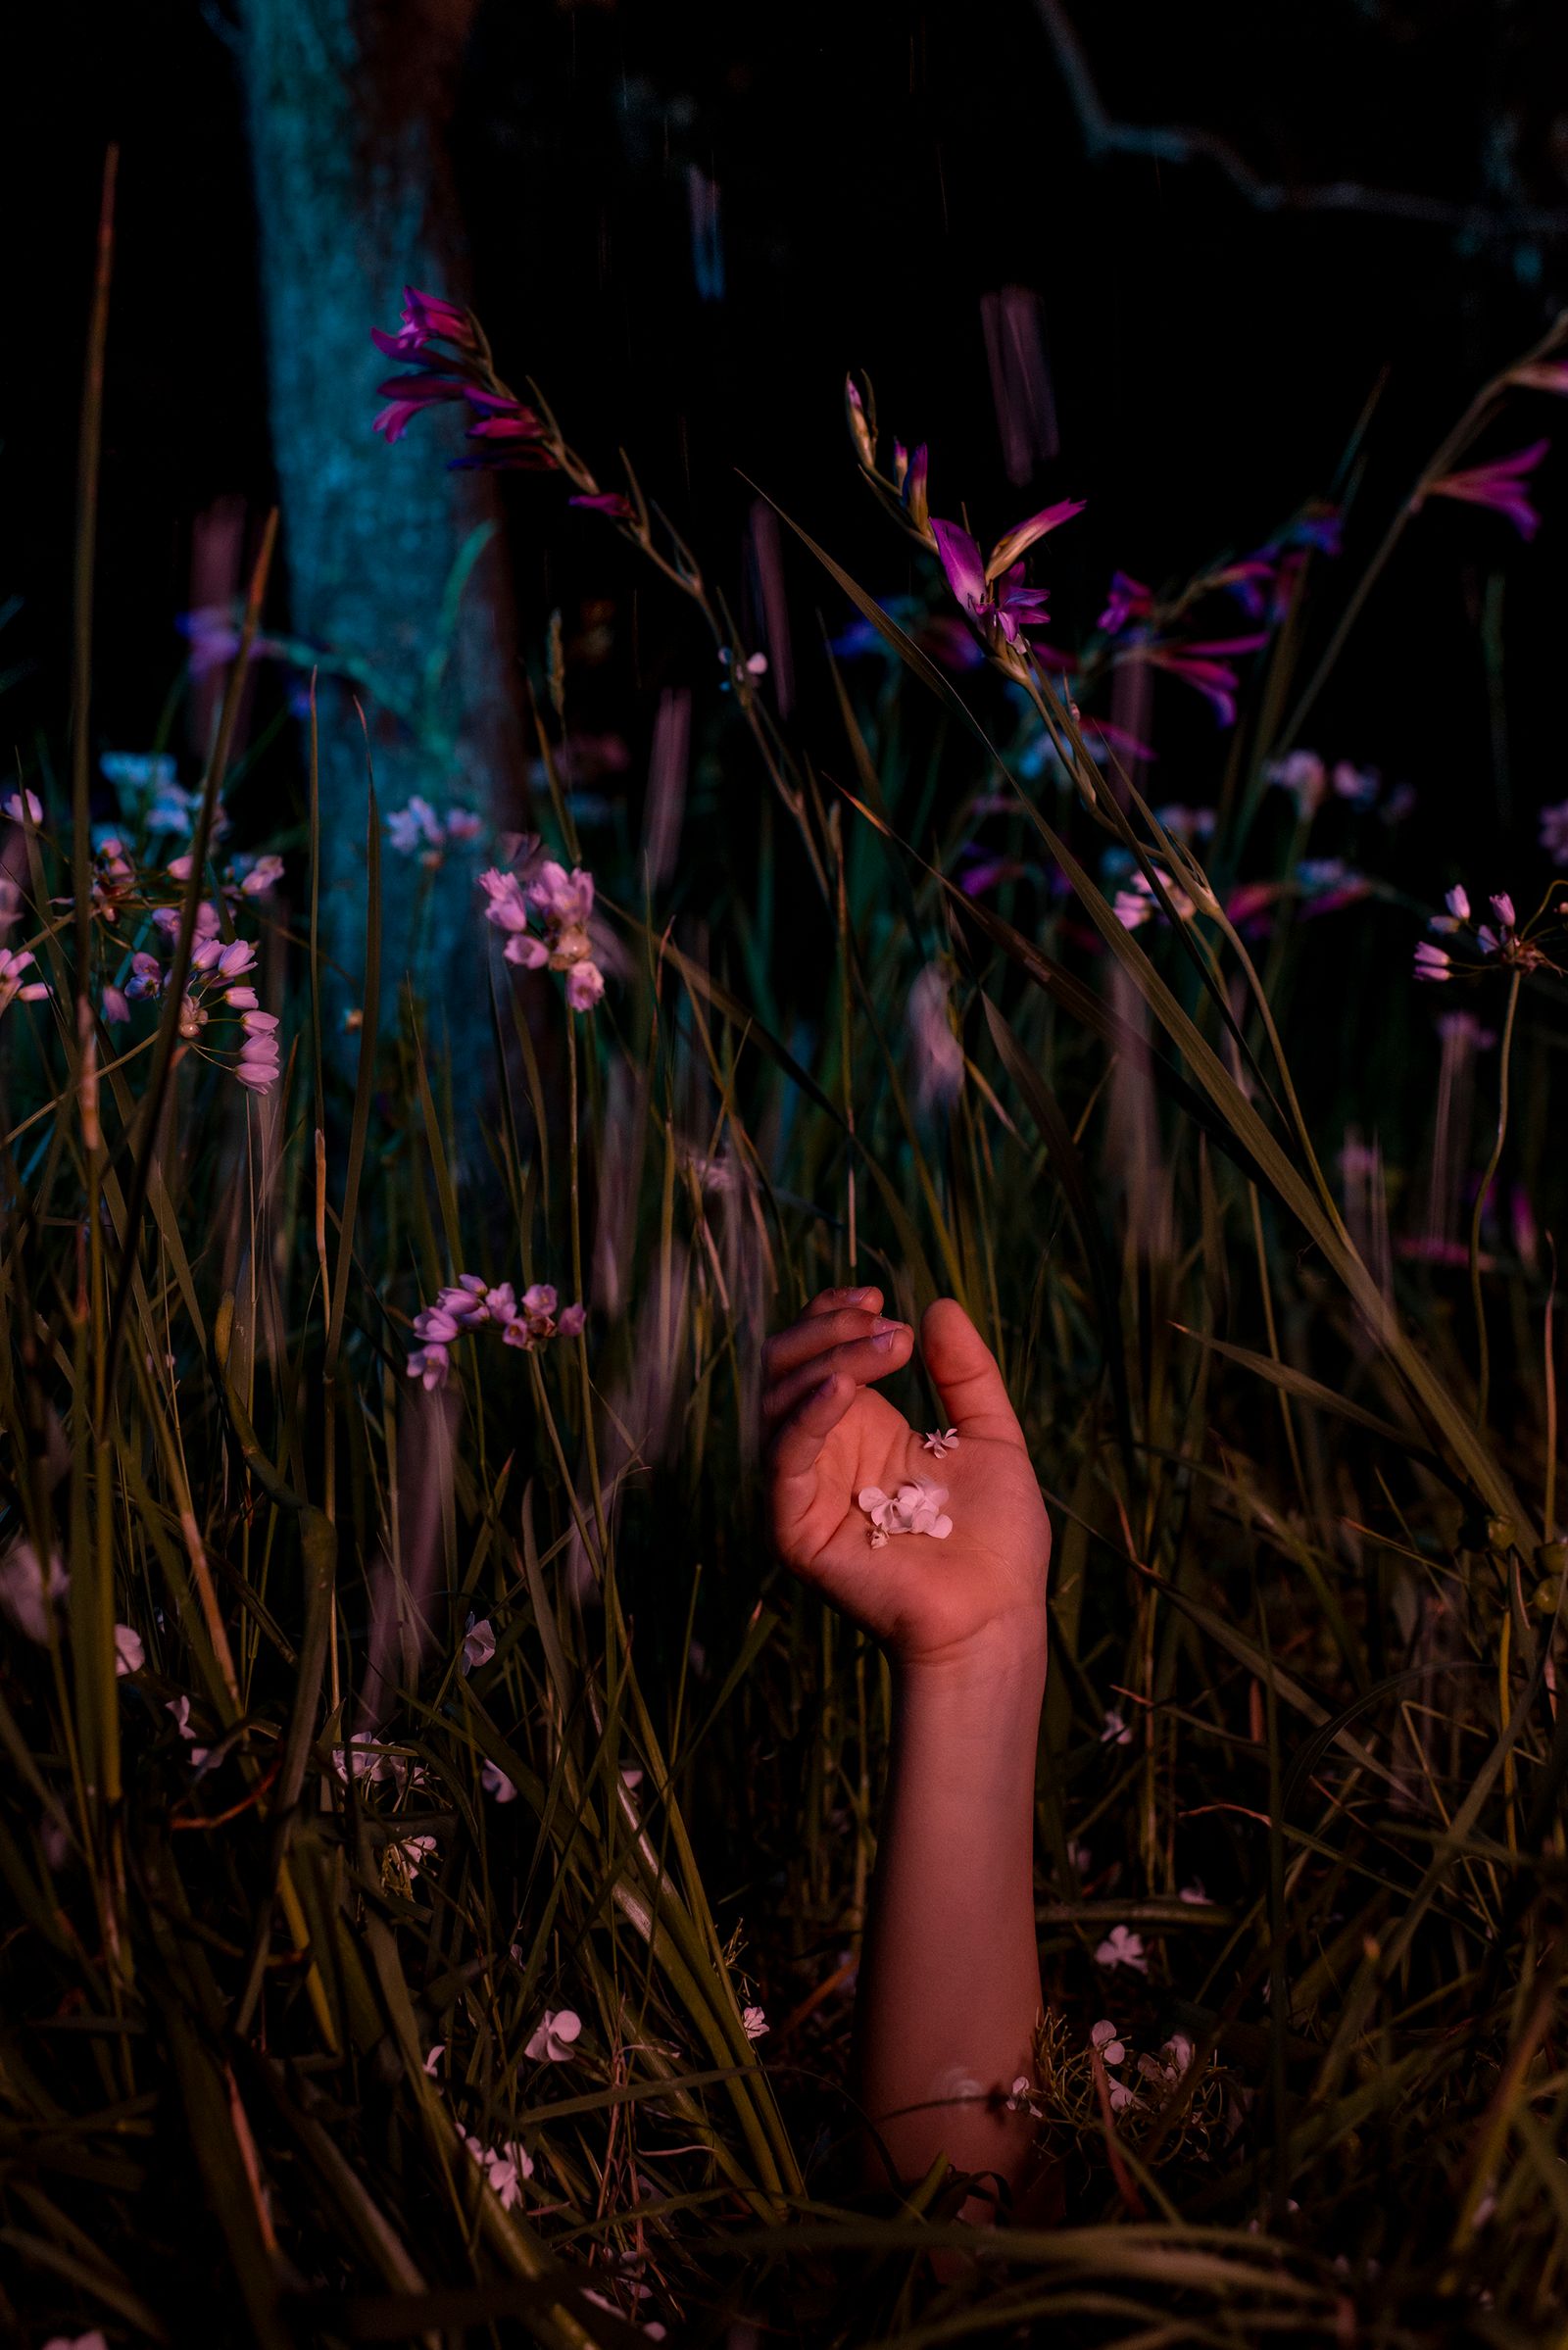 © Elisabetta Zavoli - "Flower"